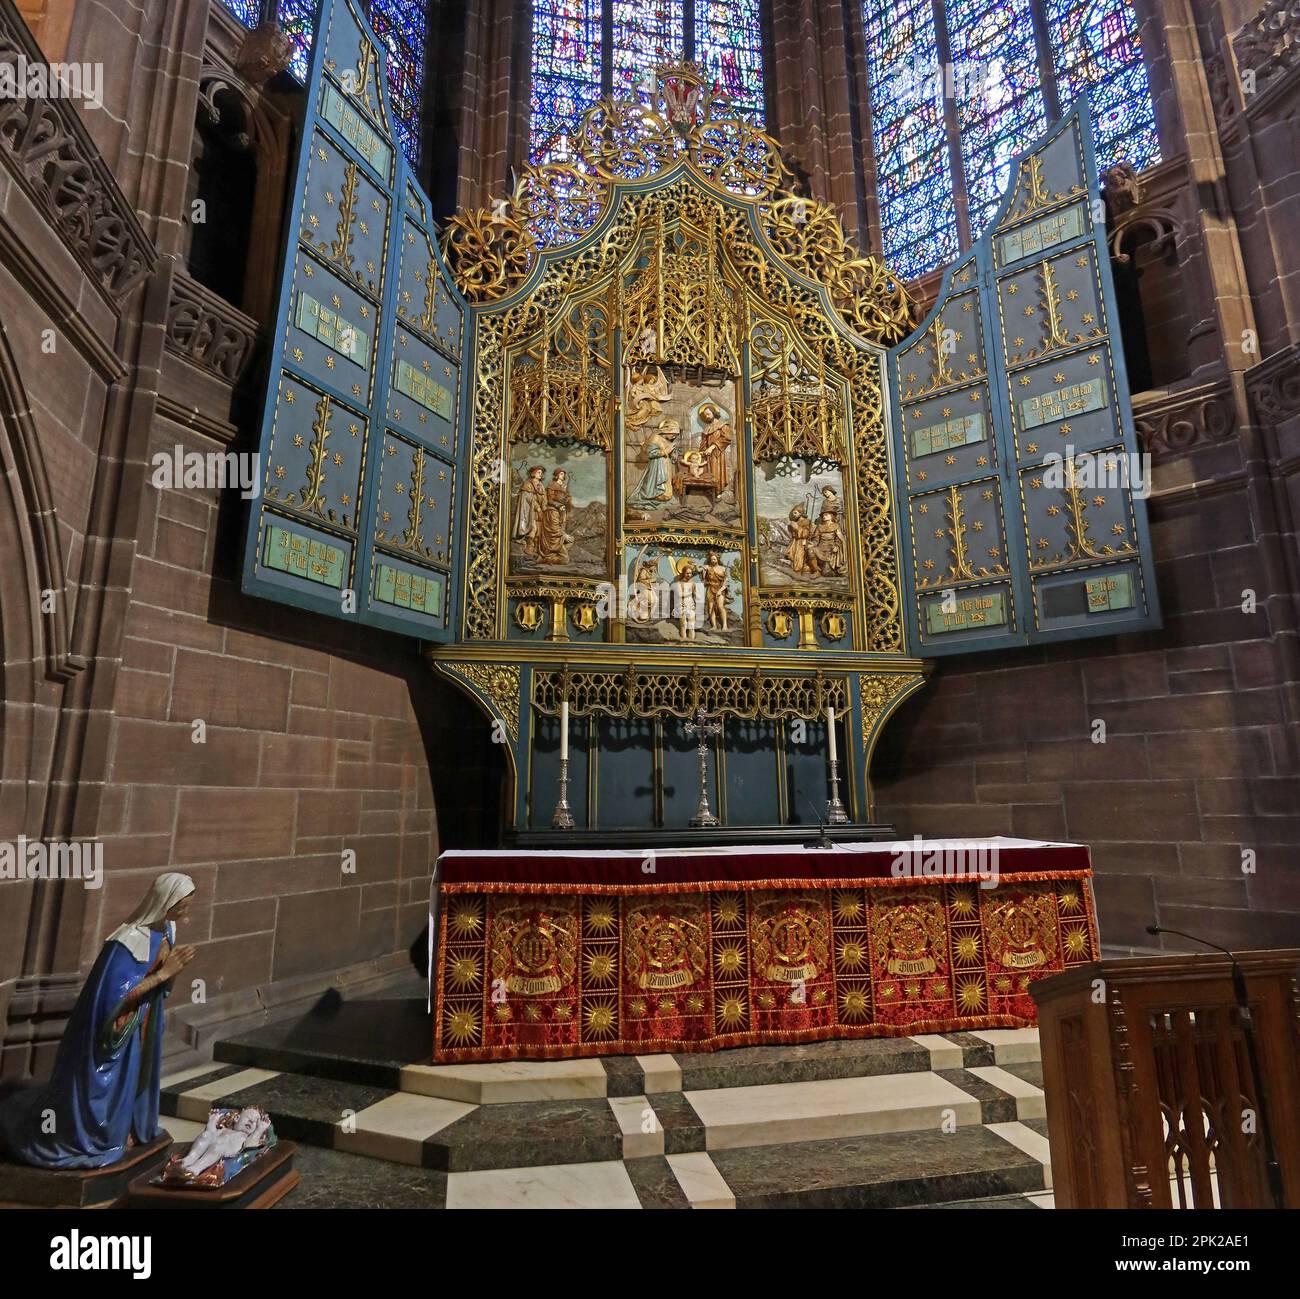 Chapelle Scotts Lady, autel, Vierge Marie, cathédrale anglicane de Liverpool, mont St James, Liverpool, Merseyside, Angleterre, Royaume-Uni, L1 7AZ Banque D'Images